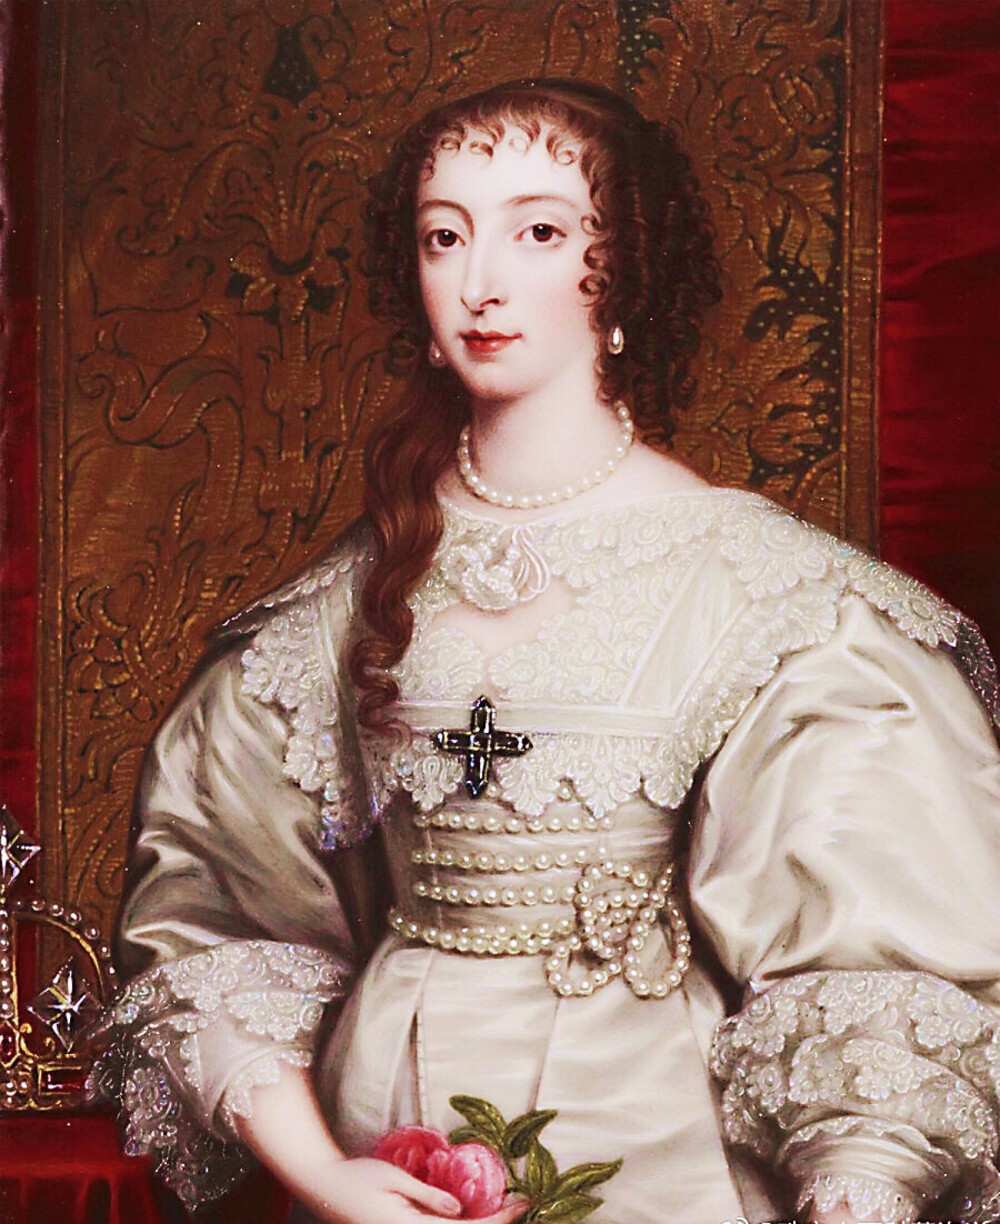 亨利埃塔.玛利亚；法国亨利四世与玛丽.德.梅迪奇的女儿，于1625年与英国查理一世结婚。
她将法国宫廷的优雅奢华带进了英国皇室，在英国佬的贵族阶层中吸引了大量的仰慕者与模仿者。她将珍珠穿戴在头发上，脖子上，耳朵上，让人们深深爱上珍珠。